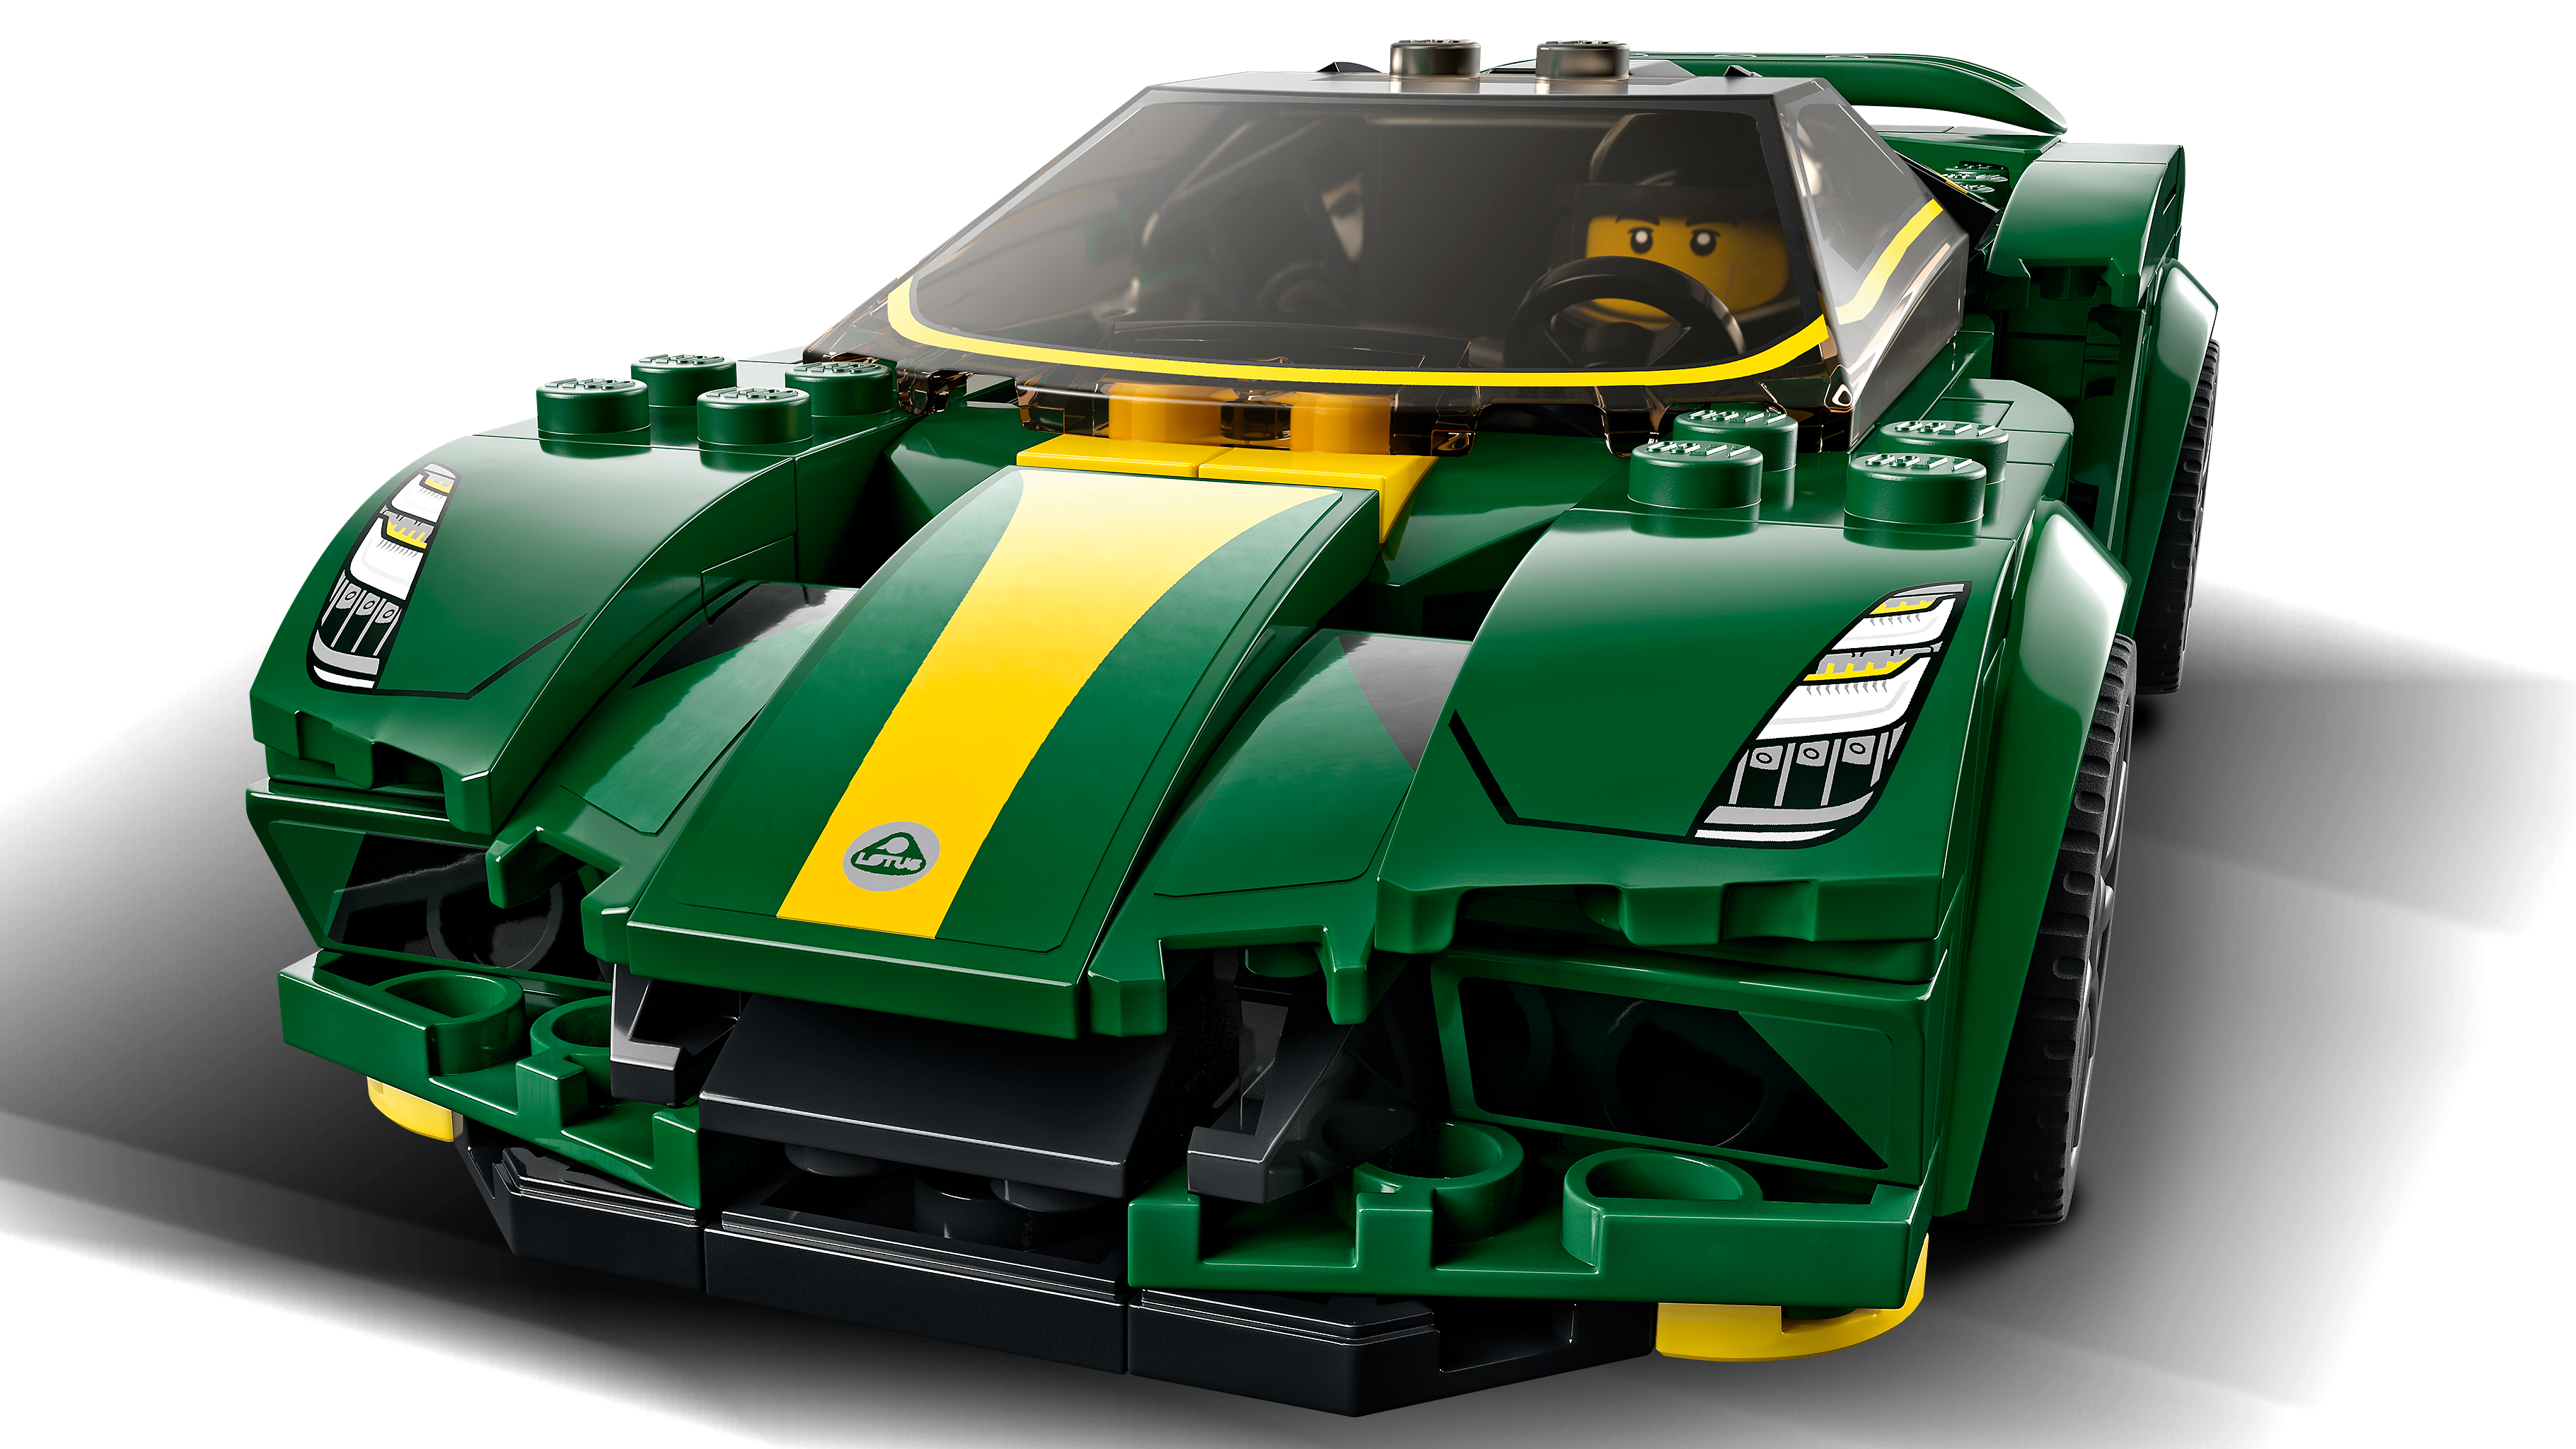 LEGO 76907 Speed Champions Lotus Evija Voiture de Course, Jouet Réduit Avec  Minifigure de Pilote de Course, Jouet Pour Enfants